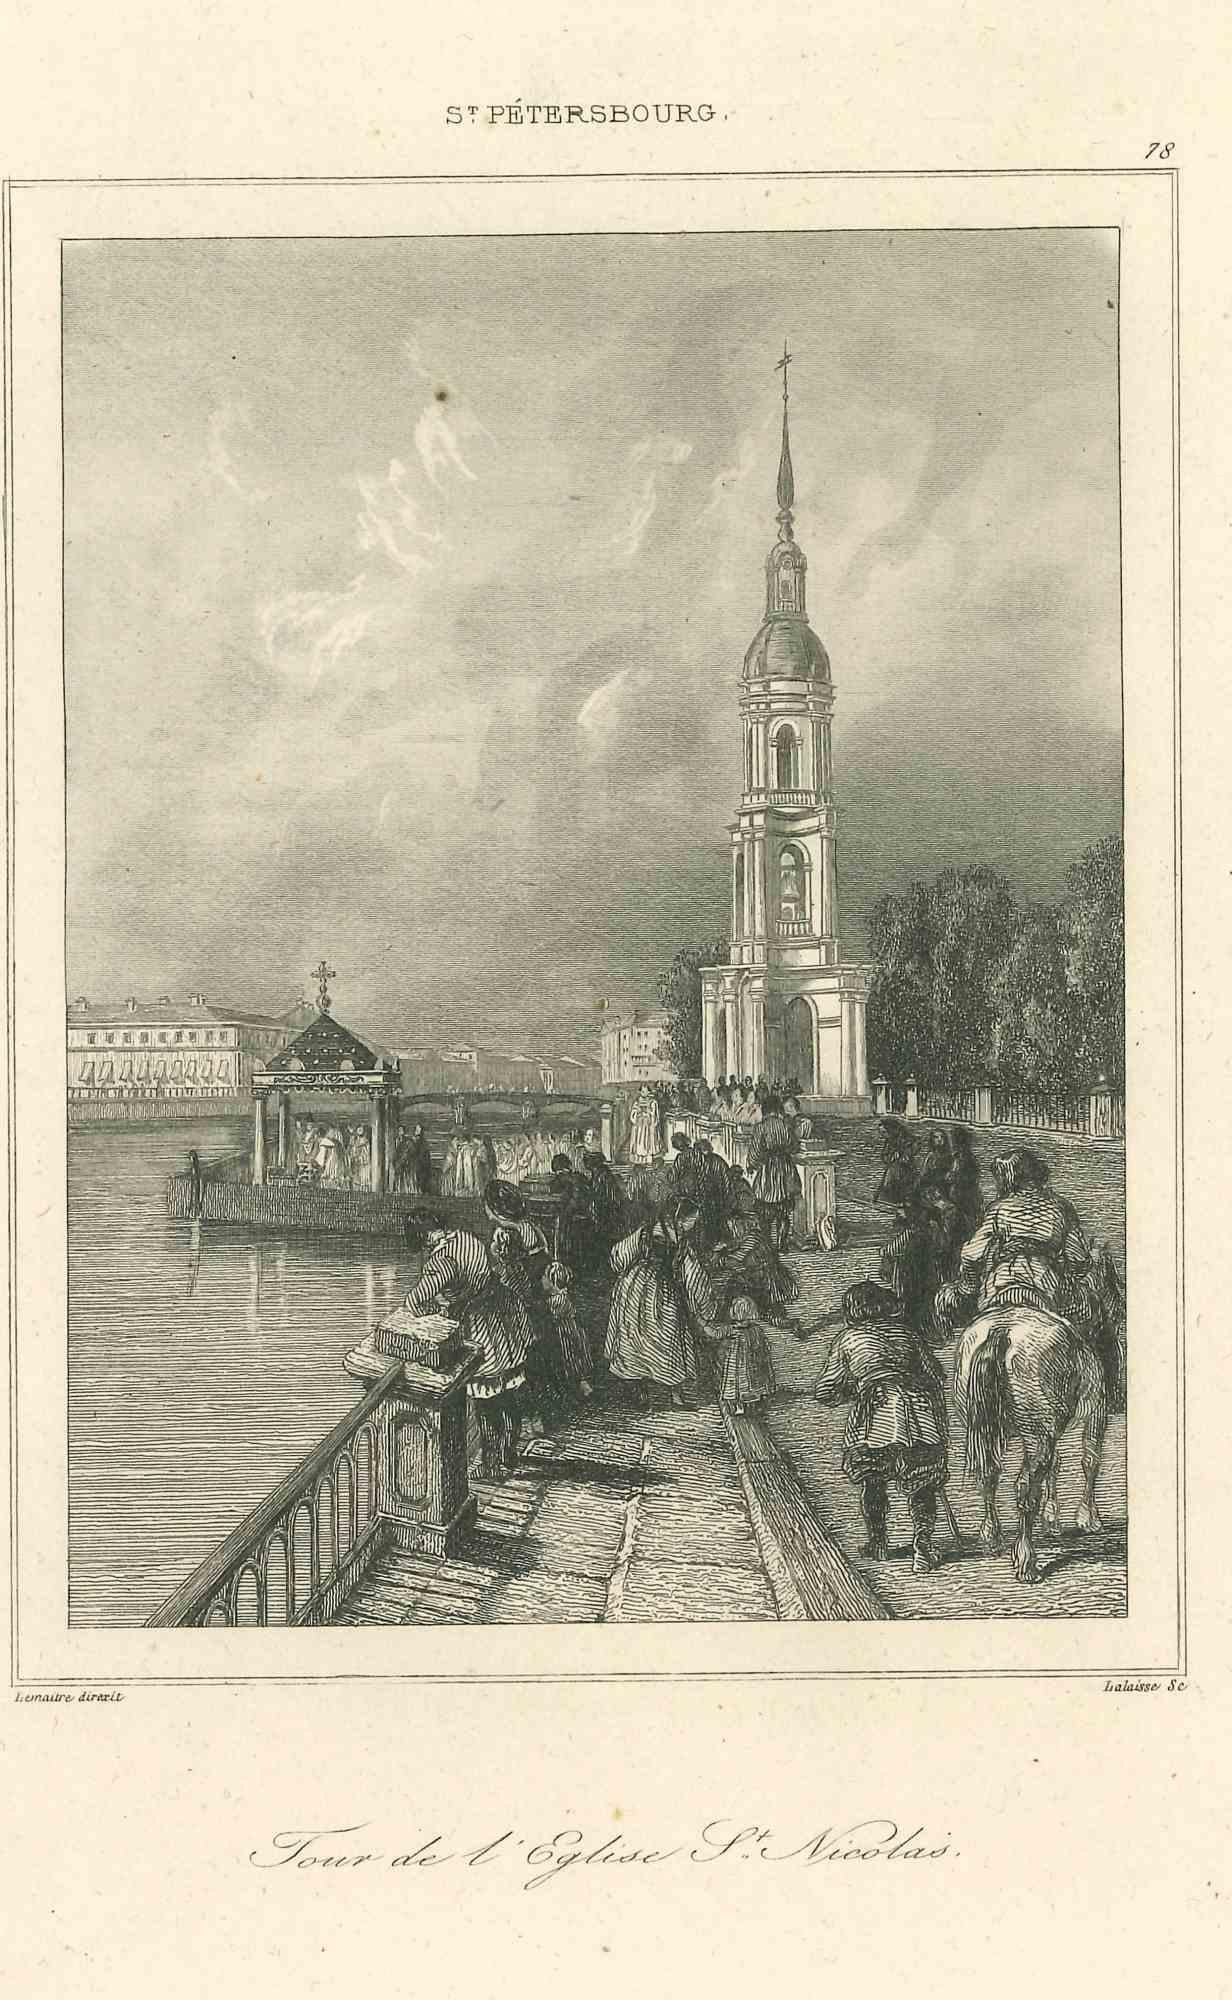 Unknown Landscape Print - Ancient View of the Tour de l'Eglise St. Nicolas - Original Lithograph - 1850s